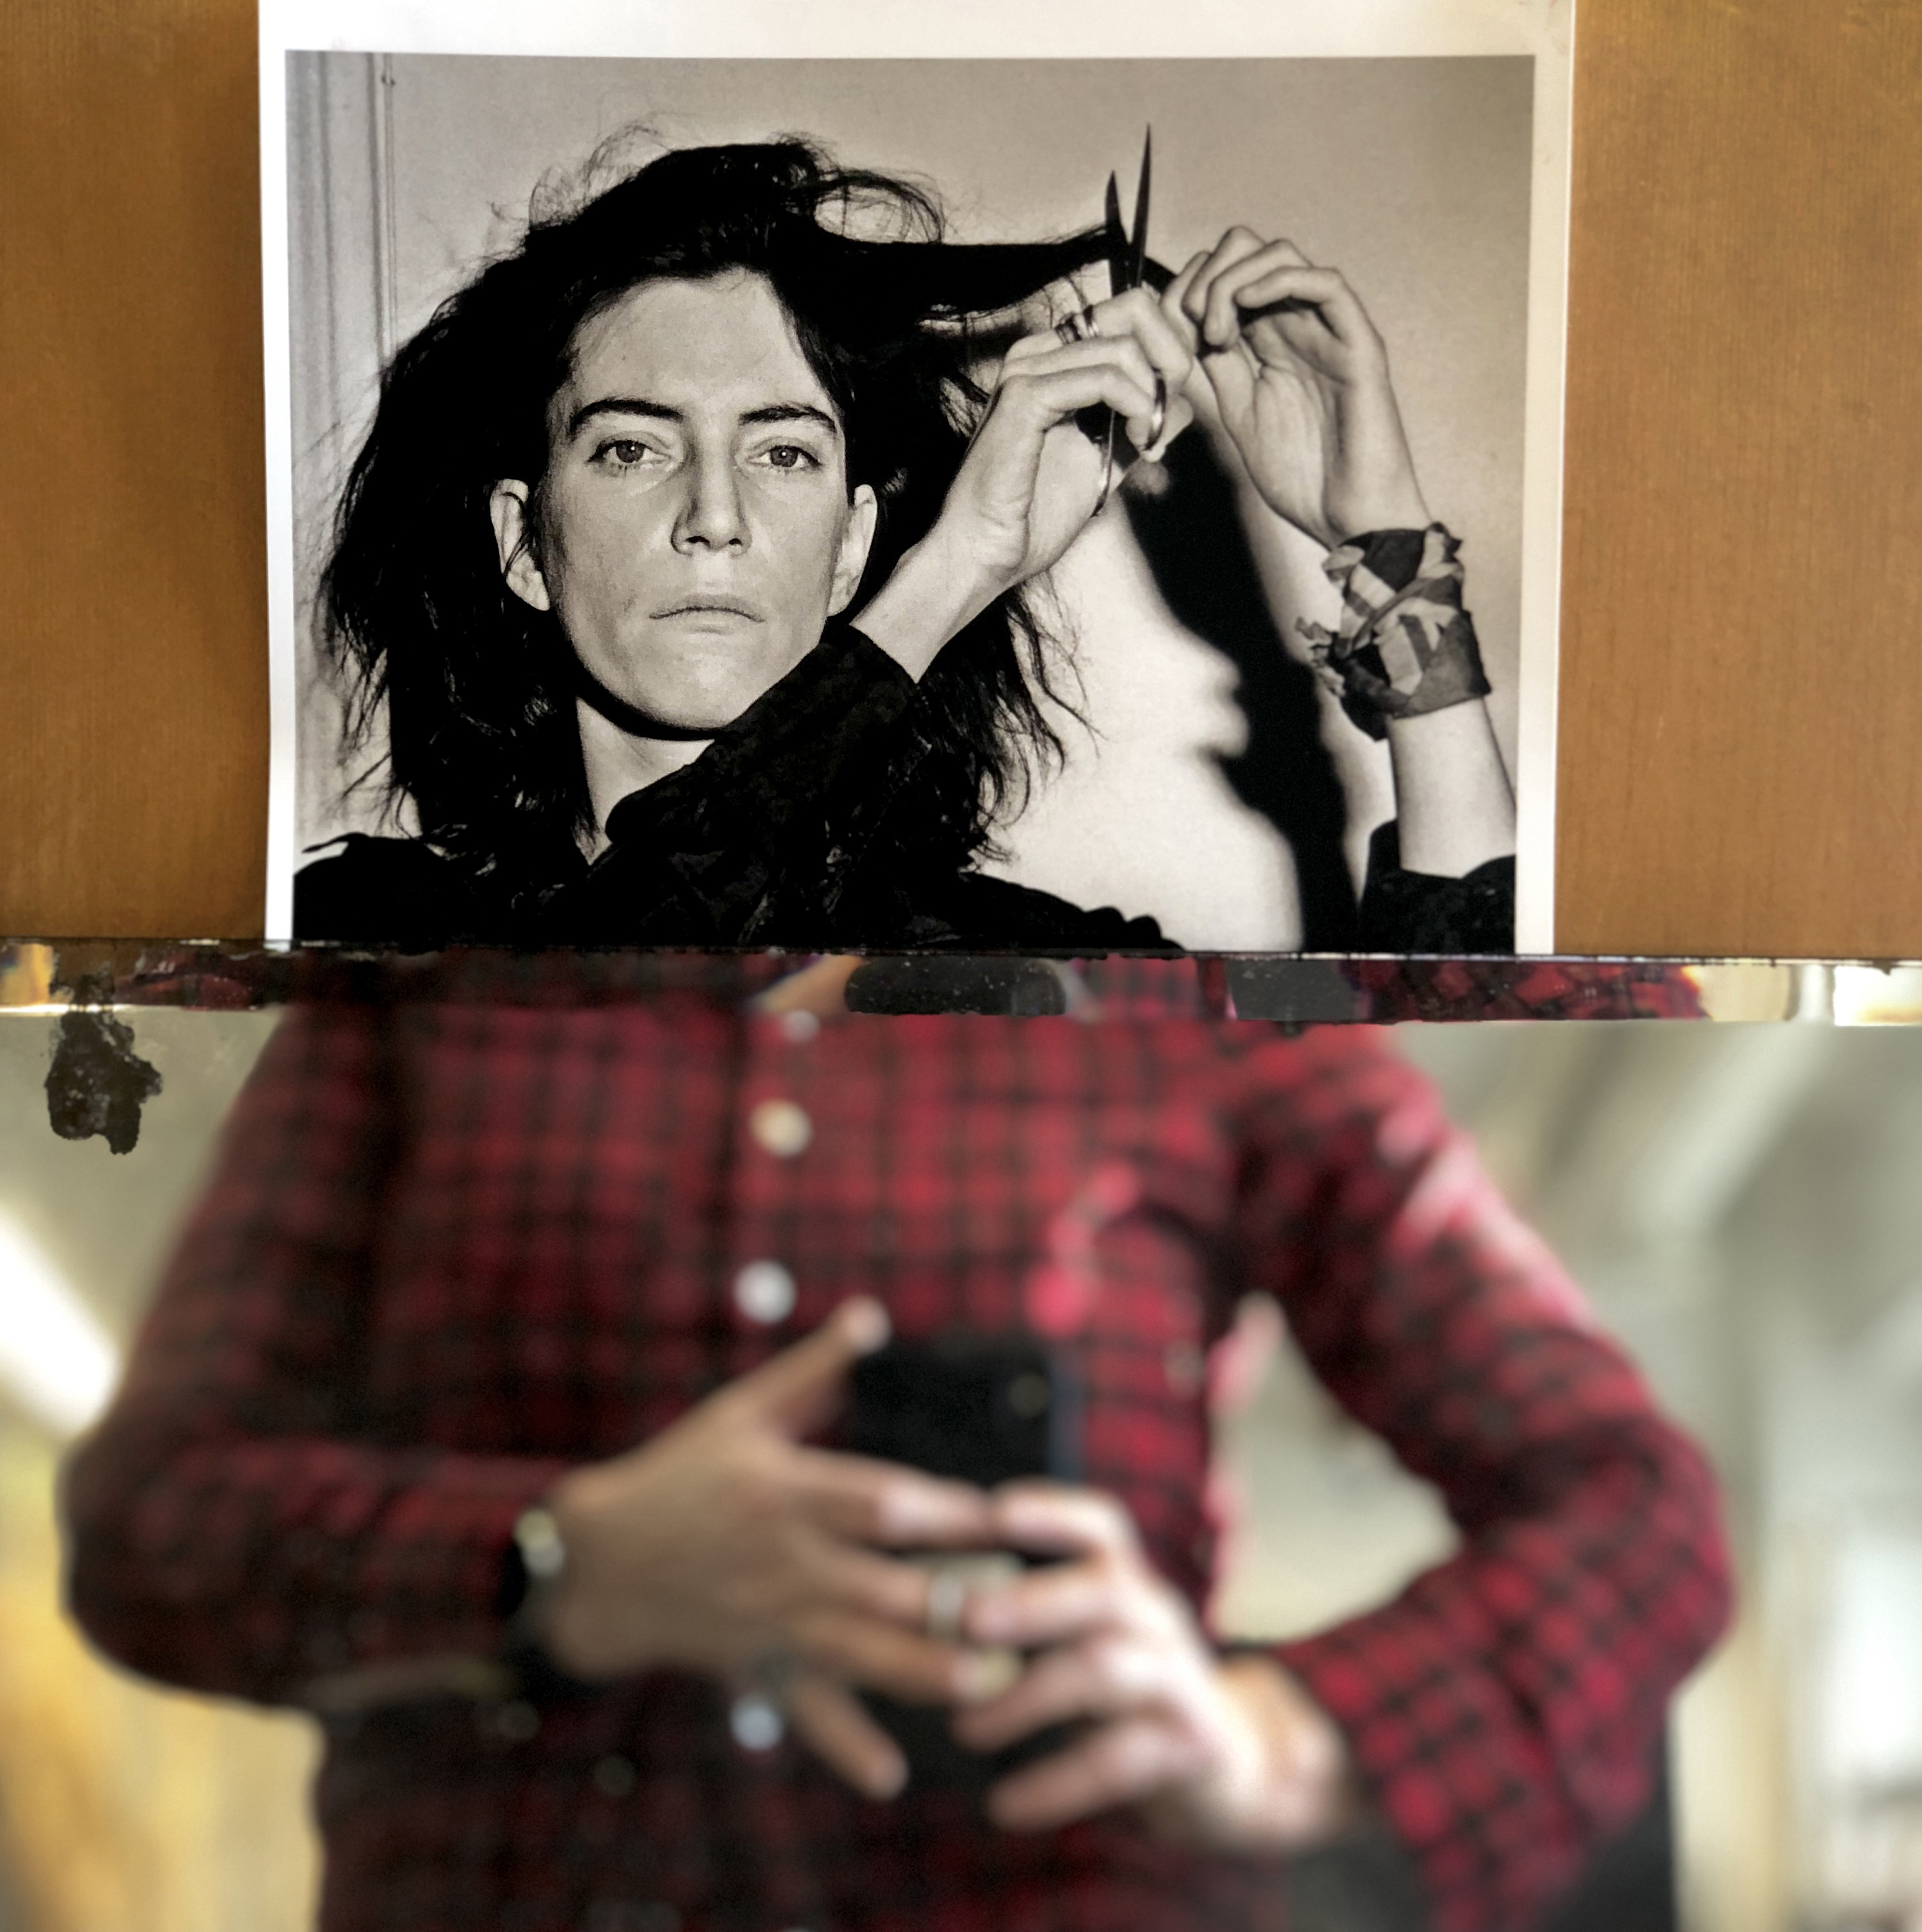 Kaksi kuvaa liitettynä yhteen. Ylemmässä on mustavalkoinen juliste, jossa on nainen juuri leikkaamassa omia hiuksiaan saksilla. Alemmassa on epäterävä naisen keskivartalo, kädet pitävät puhelinta. 